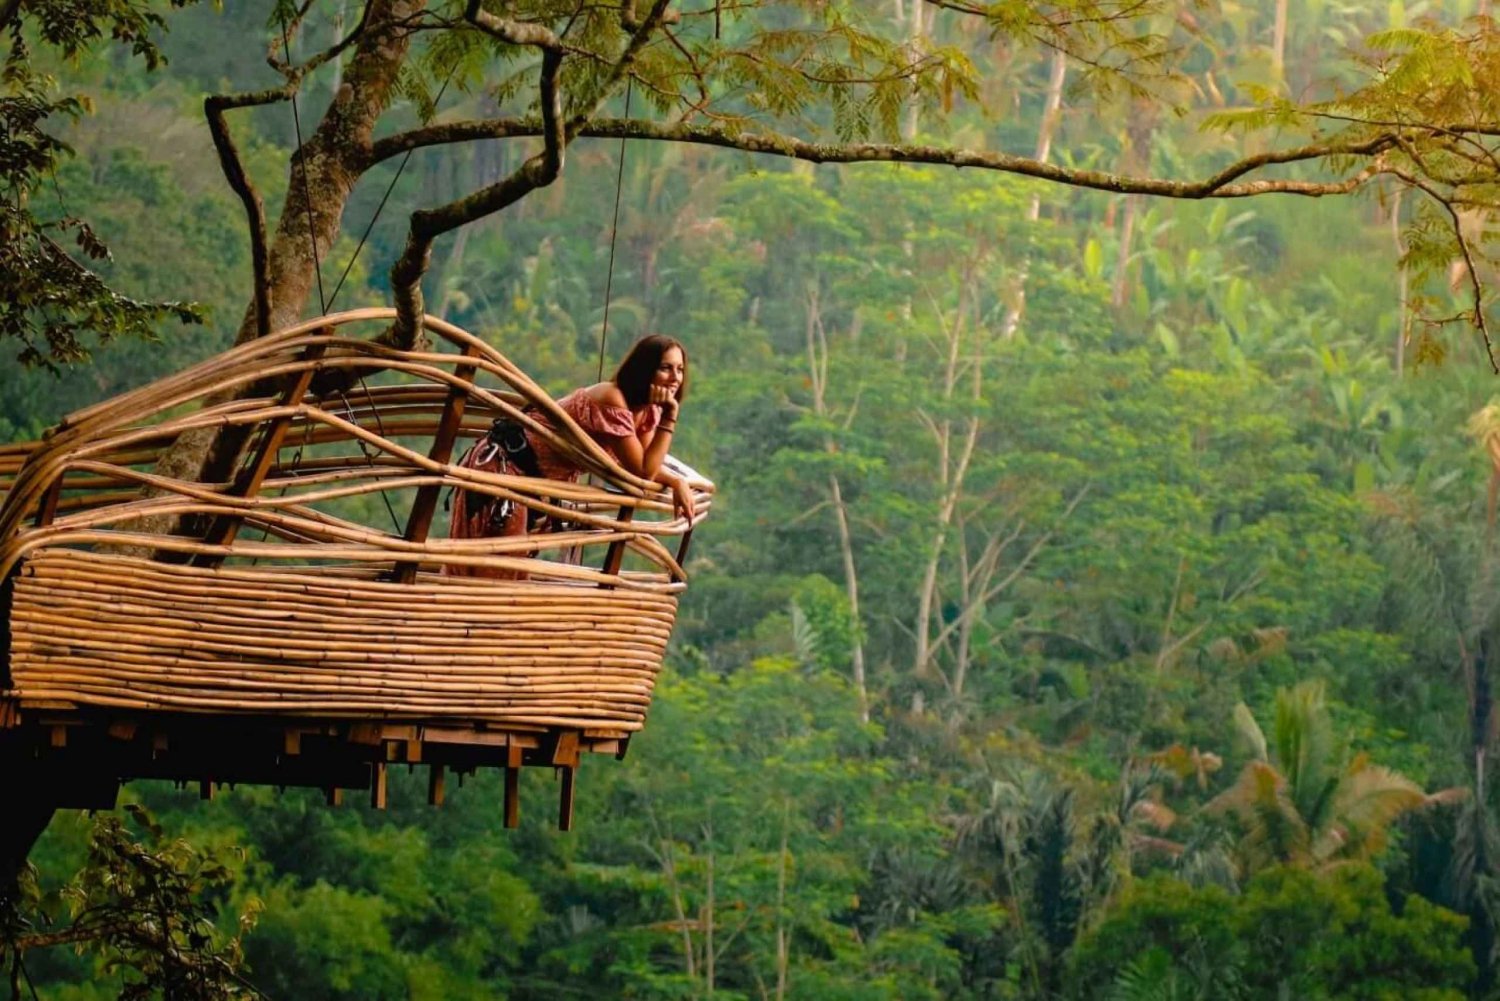 Bali: Wycieczka do Małpiego Lasu w Ubud, Tegalalang i Uluwatu o zachodzie słońca